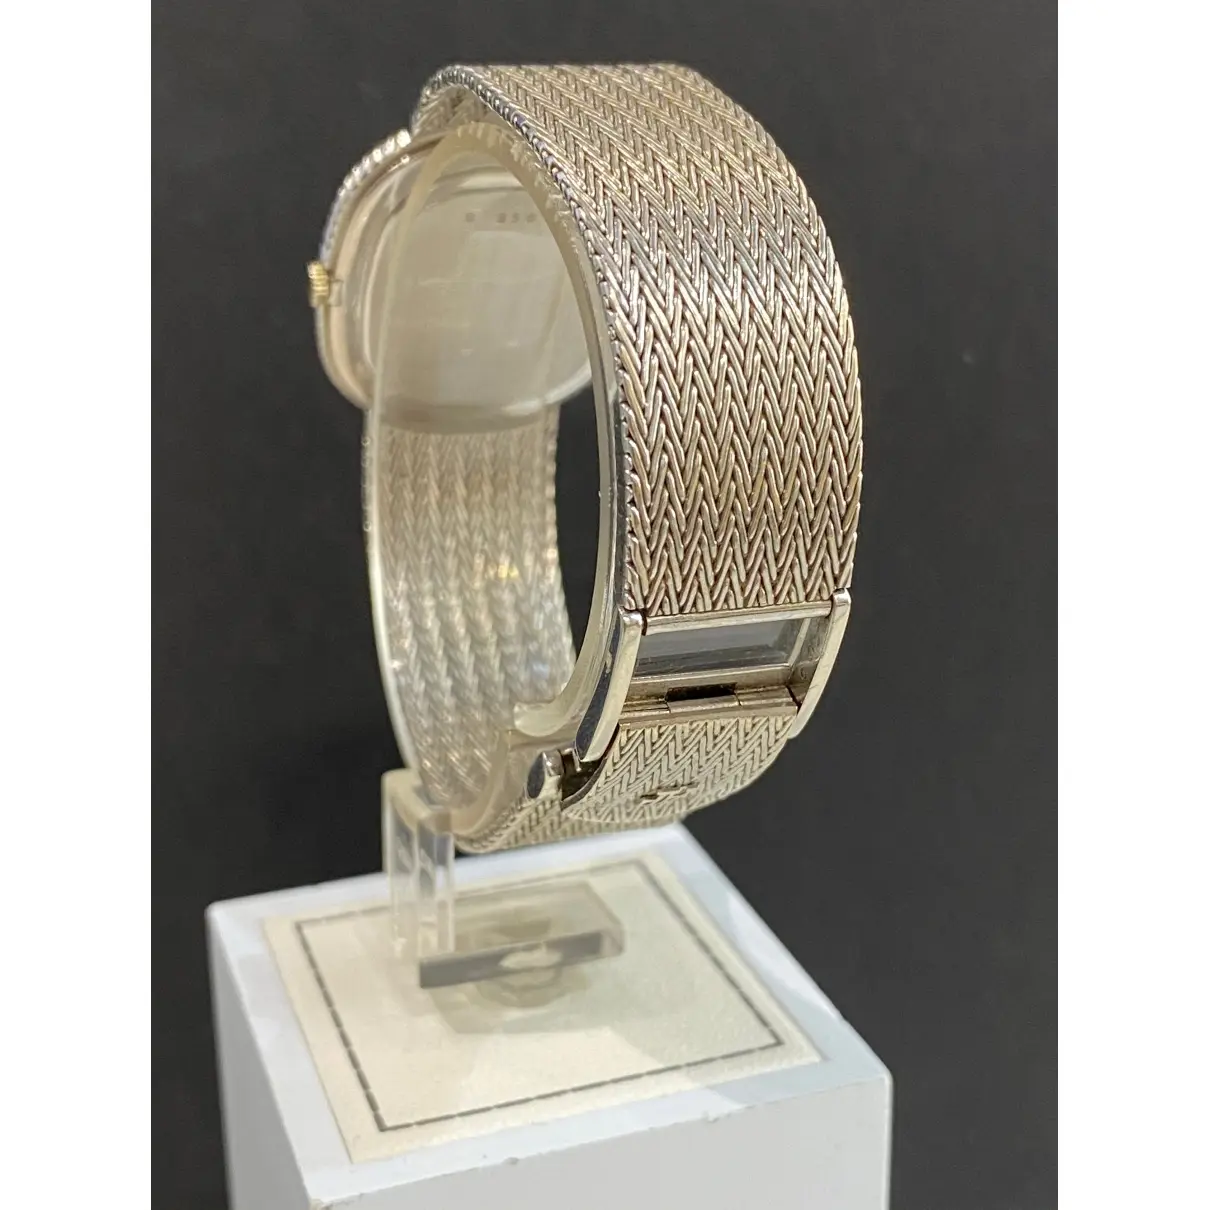 Buy Audemars Piguet Vintage white gold watch online - Vintage